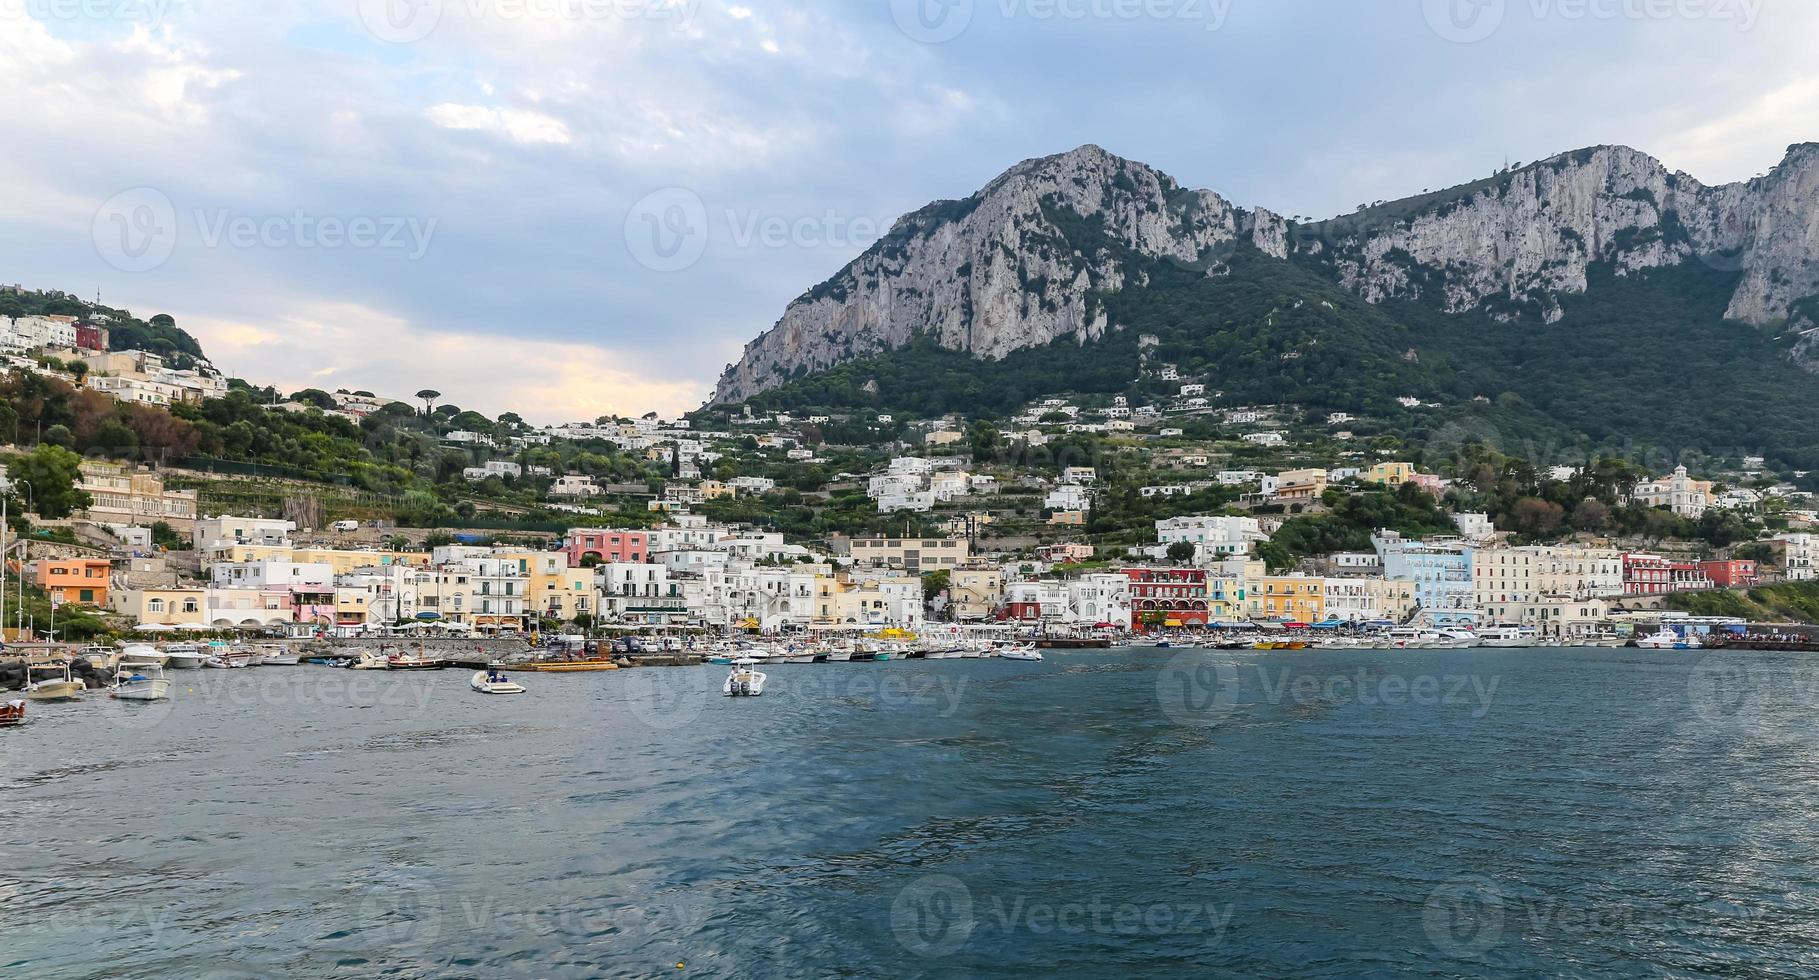 vue générale de l'île de capri à naples, italie photo